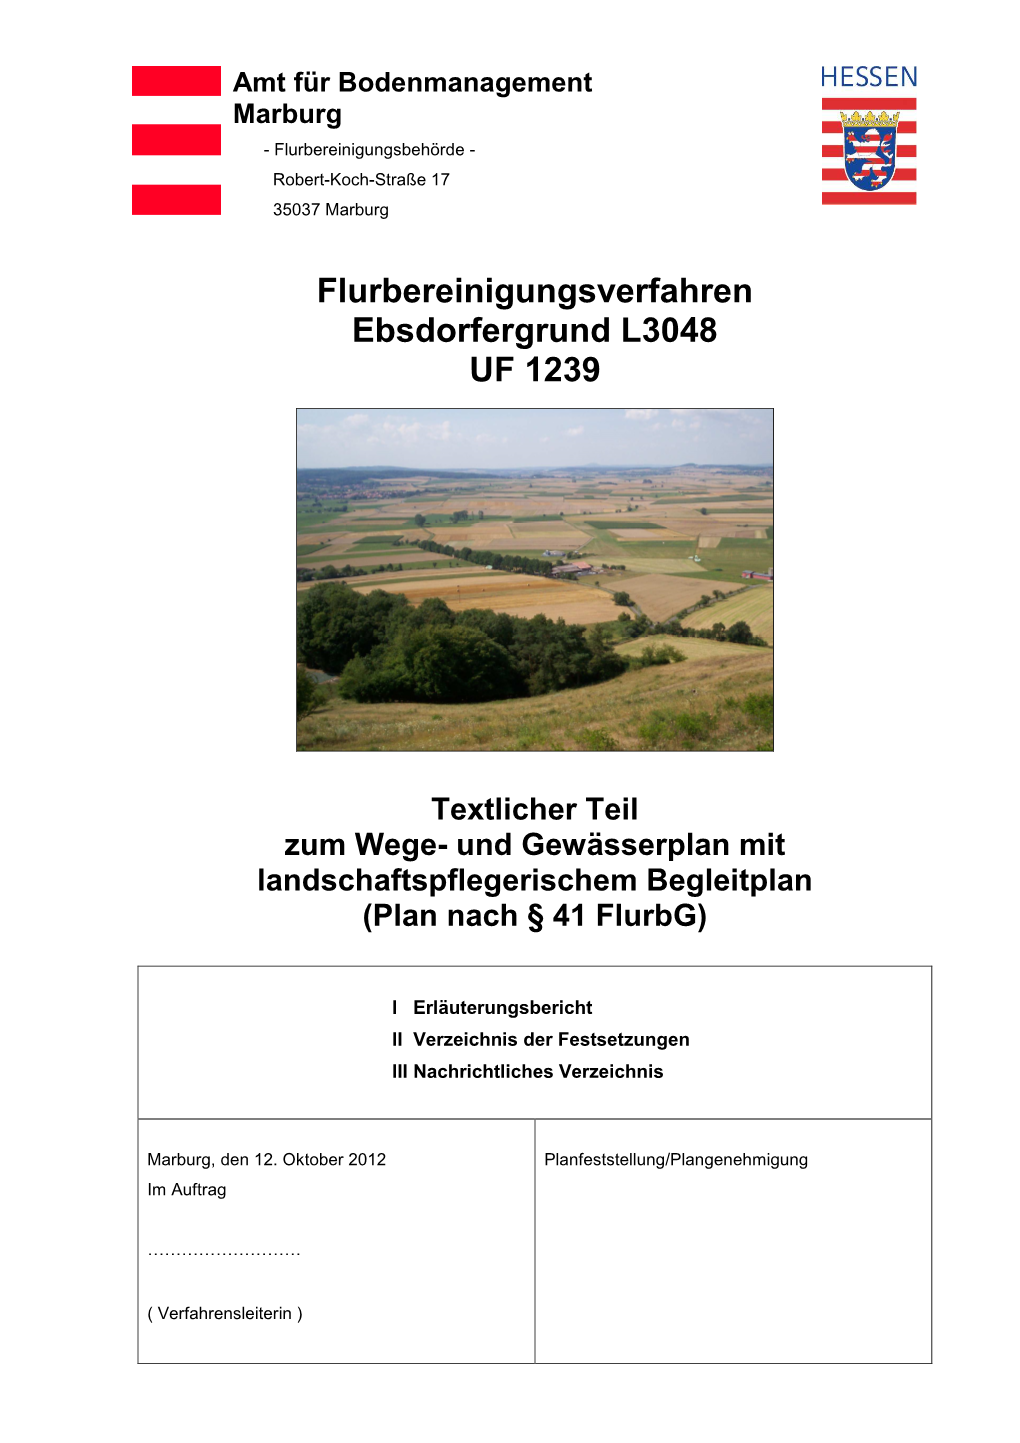 Flurbereinigungsverfahren Ebsdorfergrund L3048 UF 1239